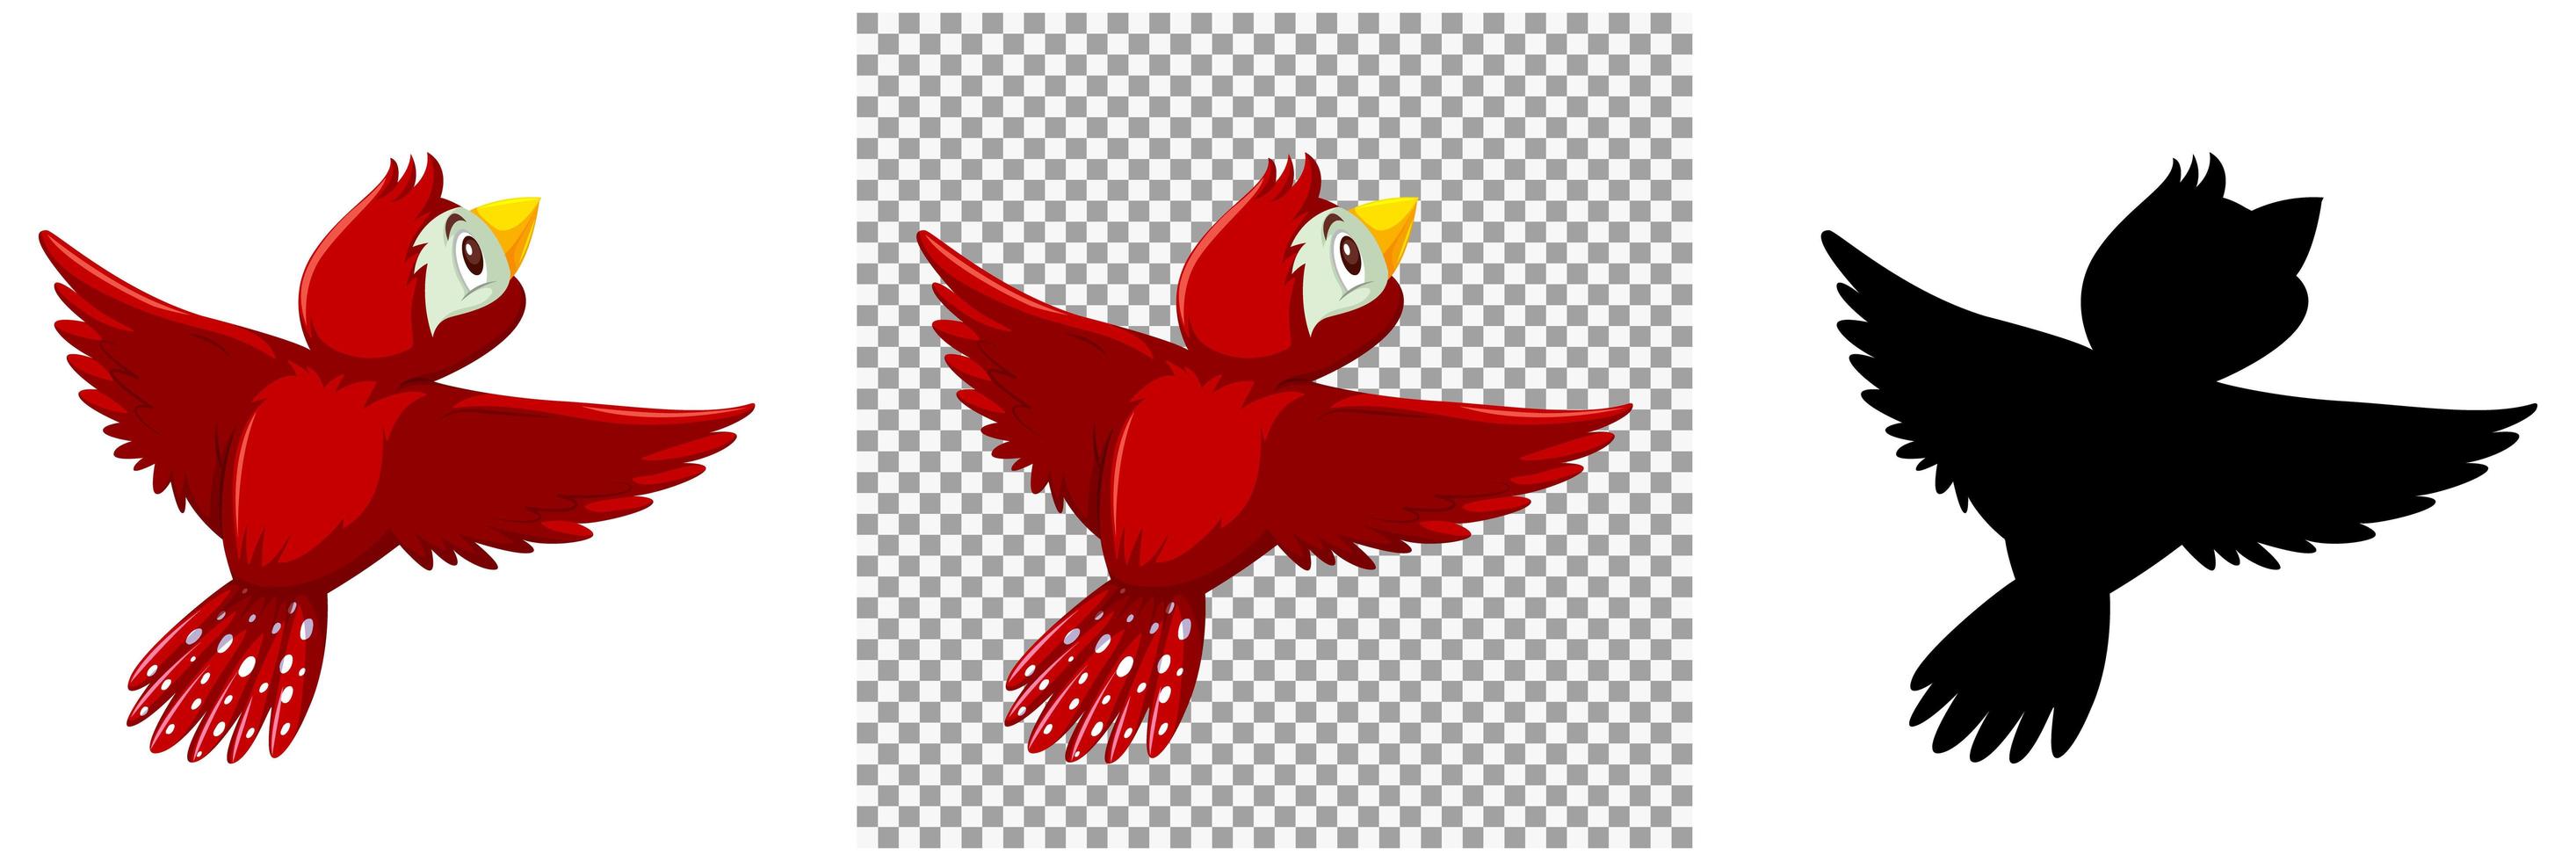 personaje de dibujos animados lindo pájaro rojo 1783166 Vector en Vecteezy